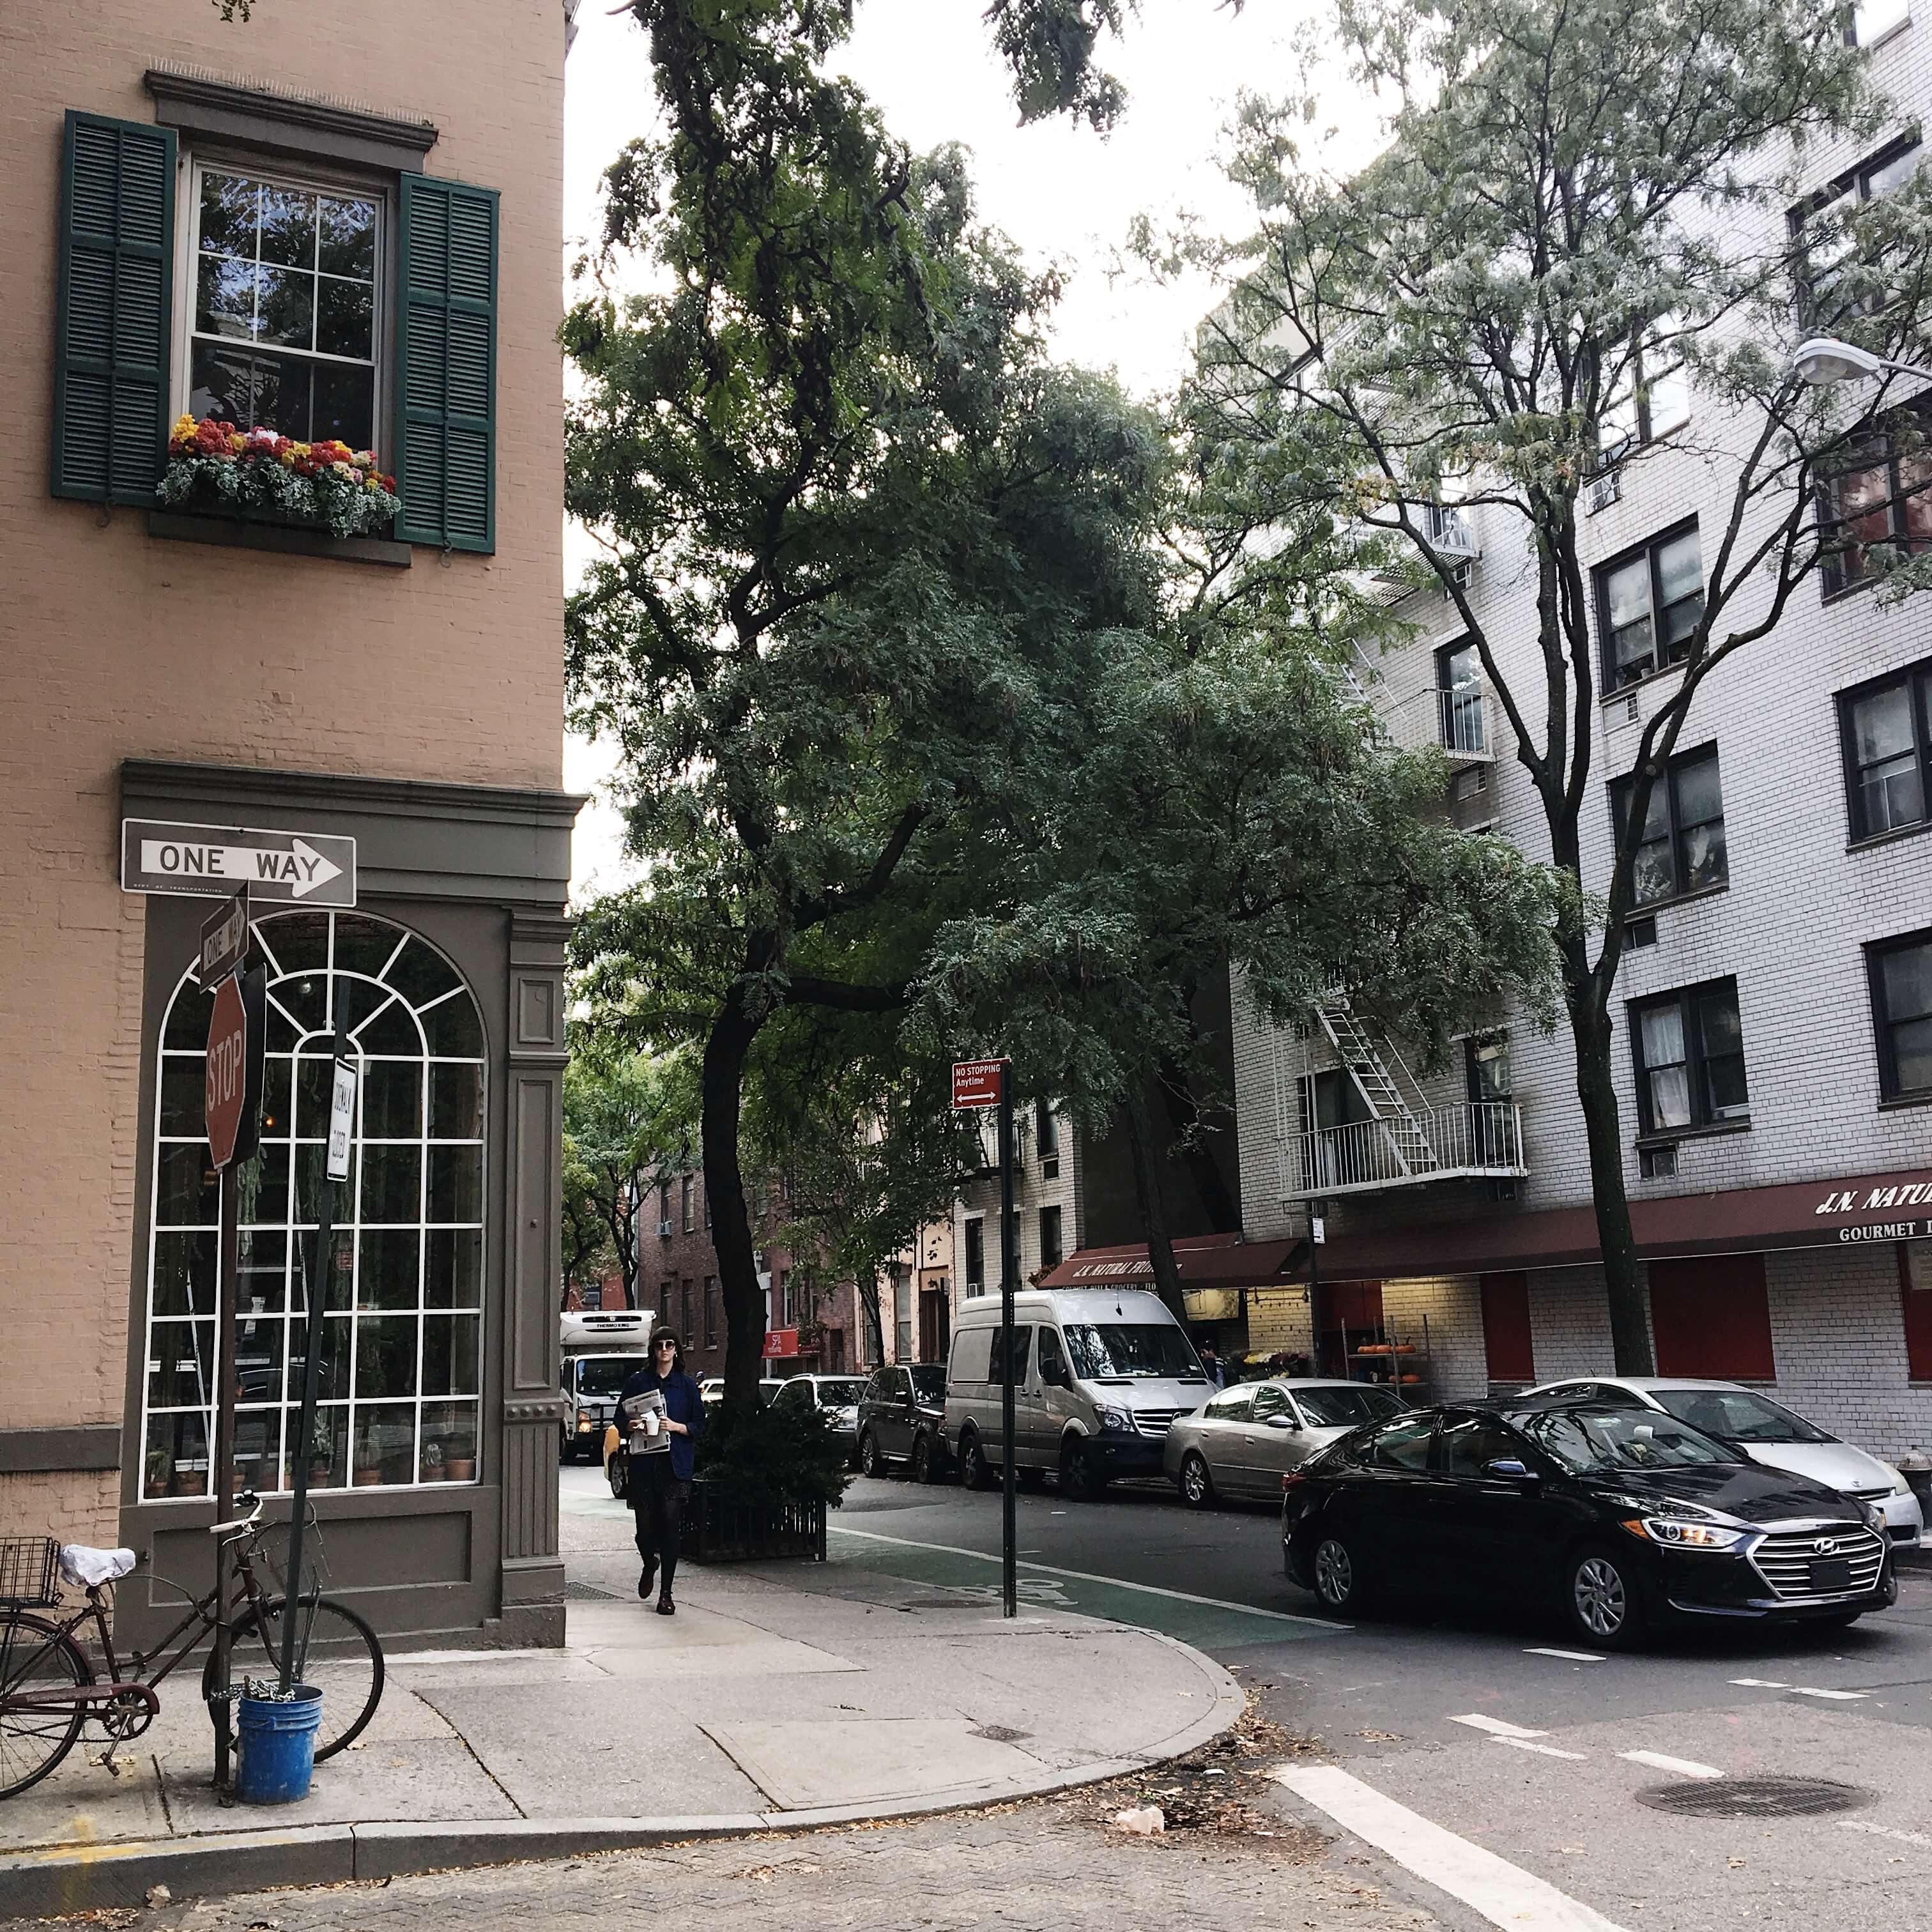 NYC Trip Recap | October 2017 - Greenwich Village 